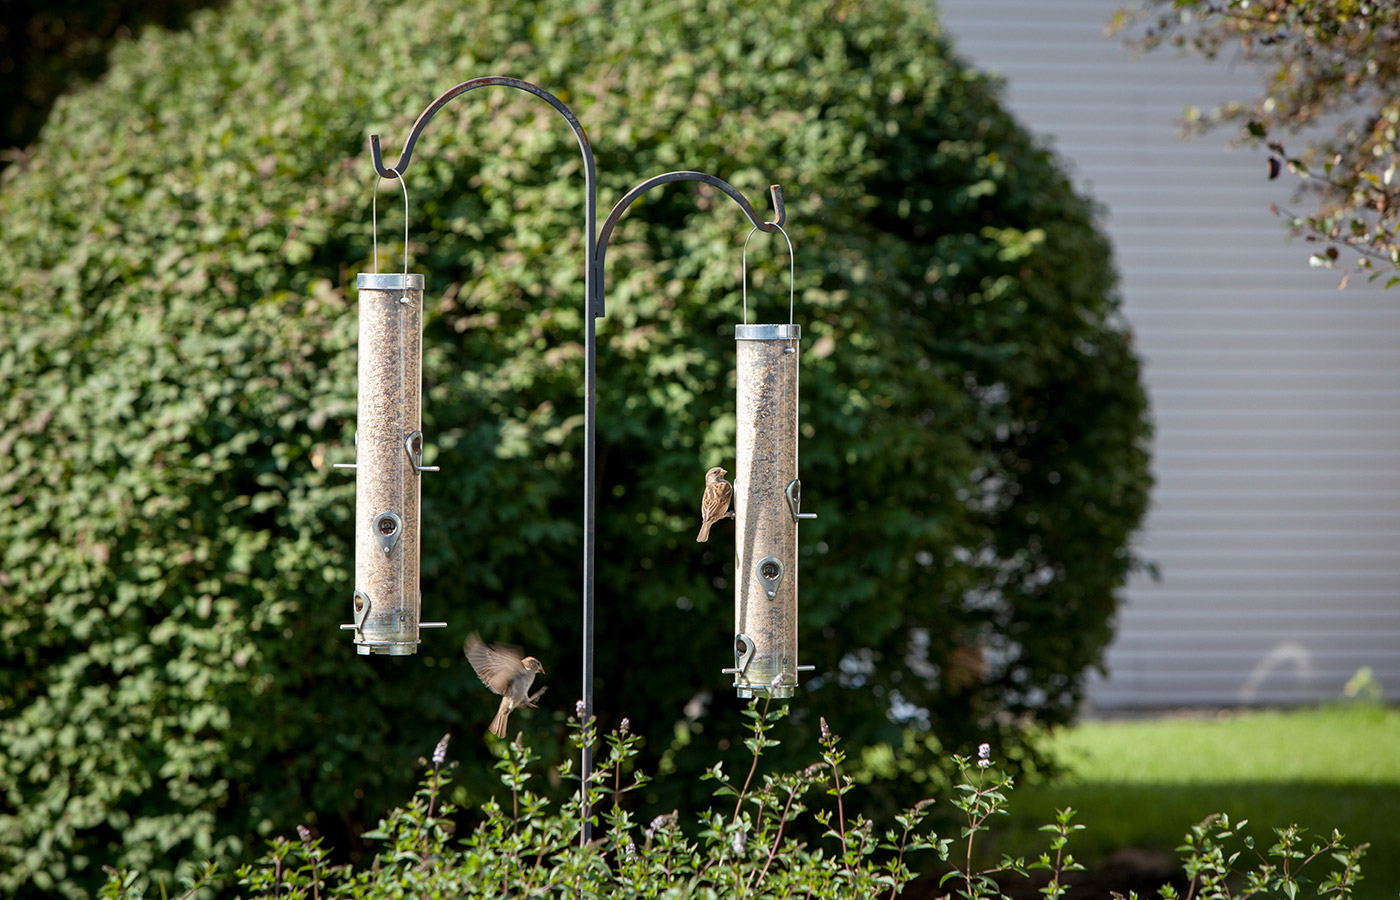 Two bird feeders outside.